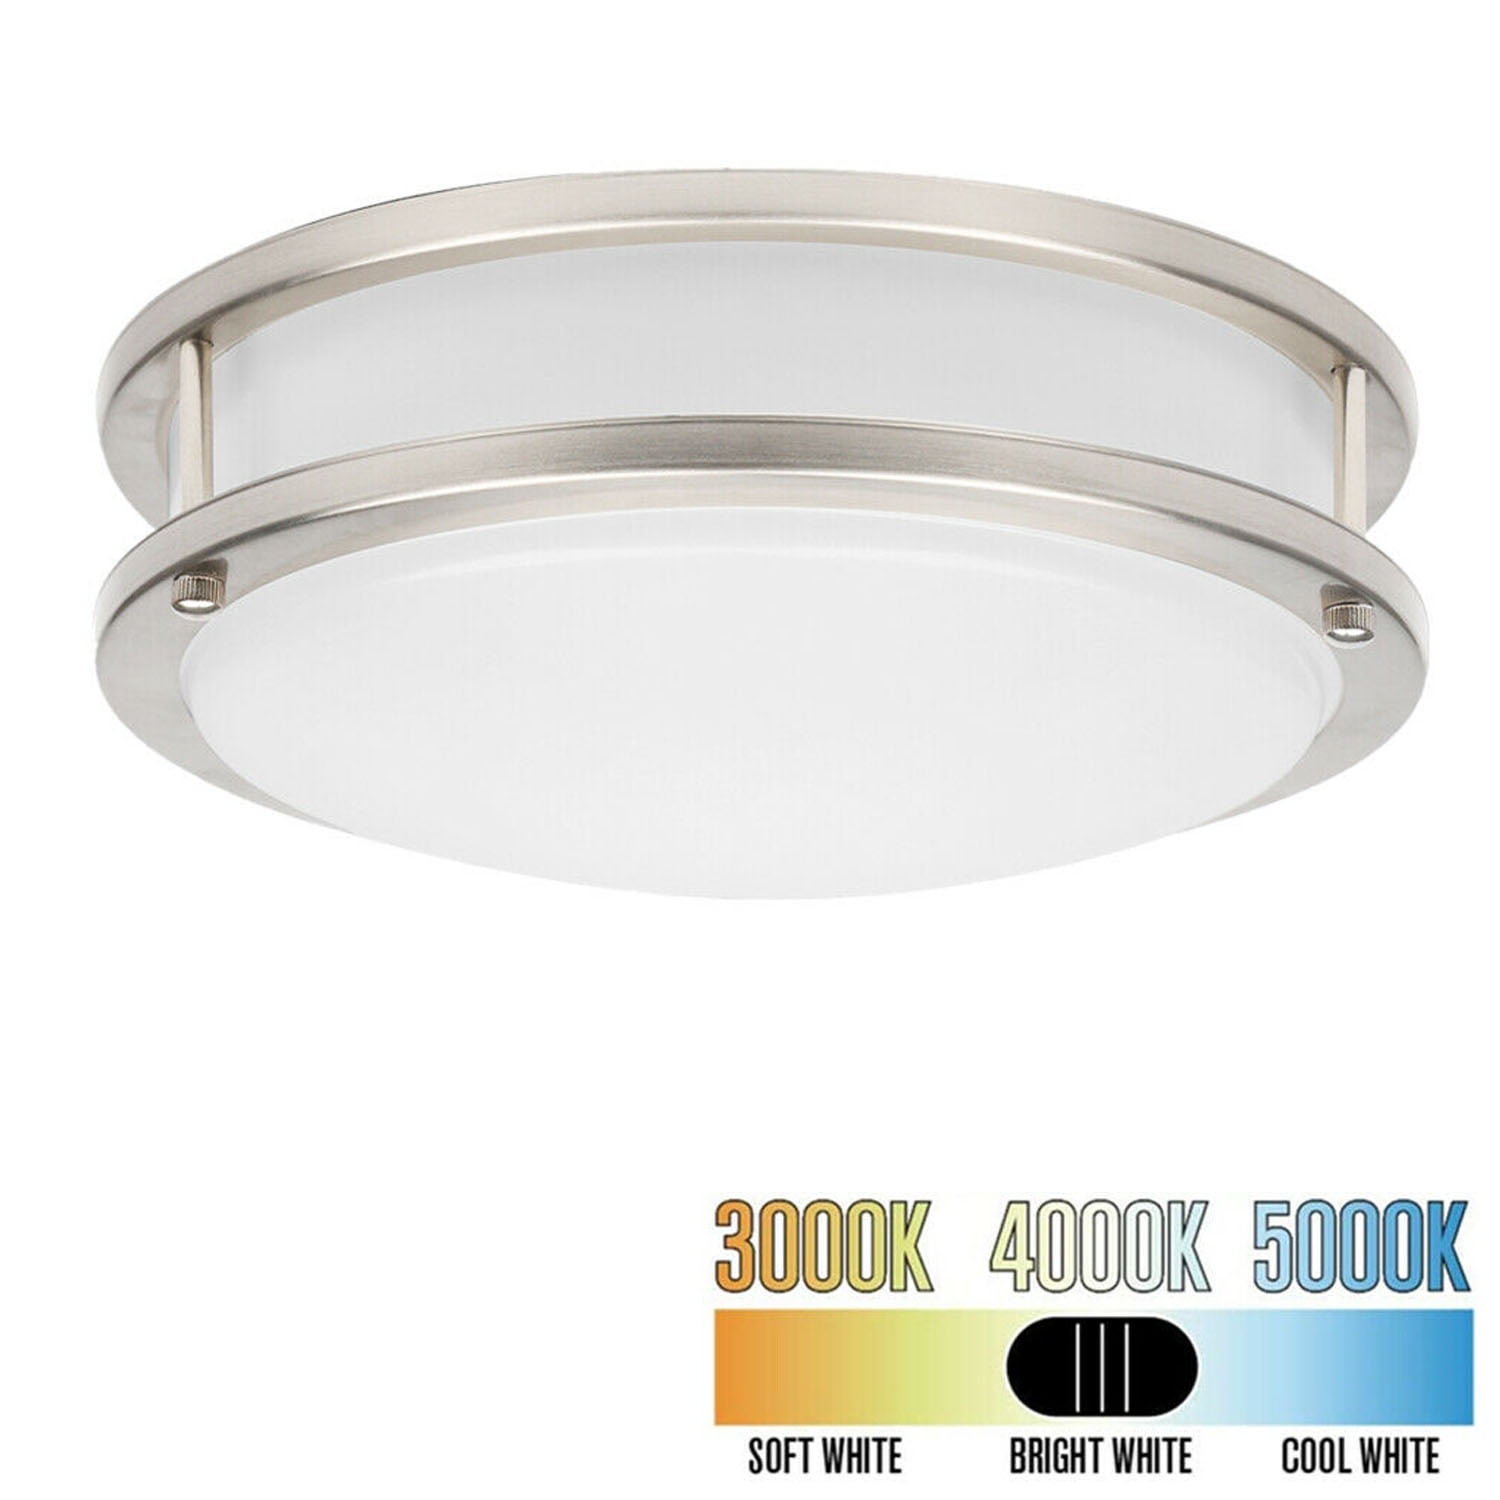 Facon cETL Listed LED  New Mushroom Flush Mount Ceiling Light 4000K Cool White 